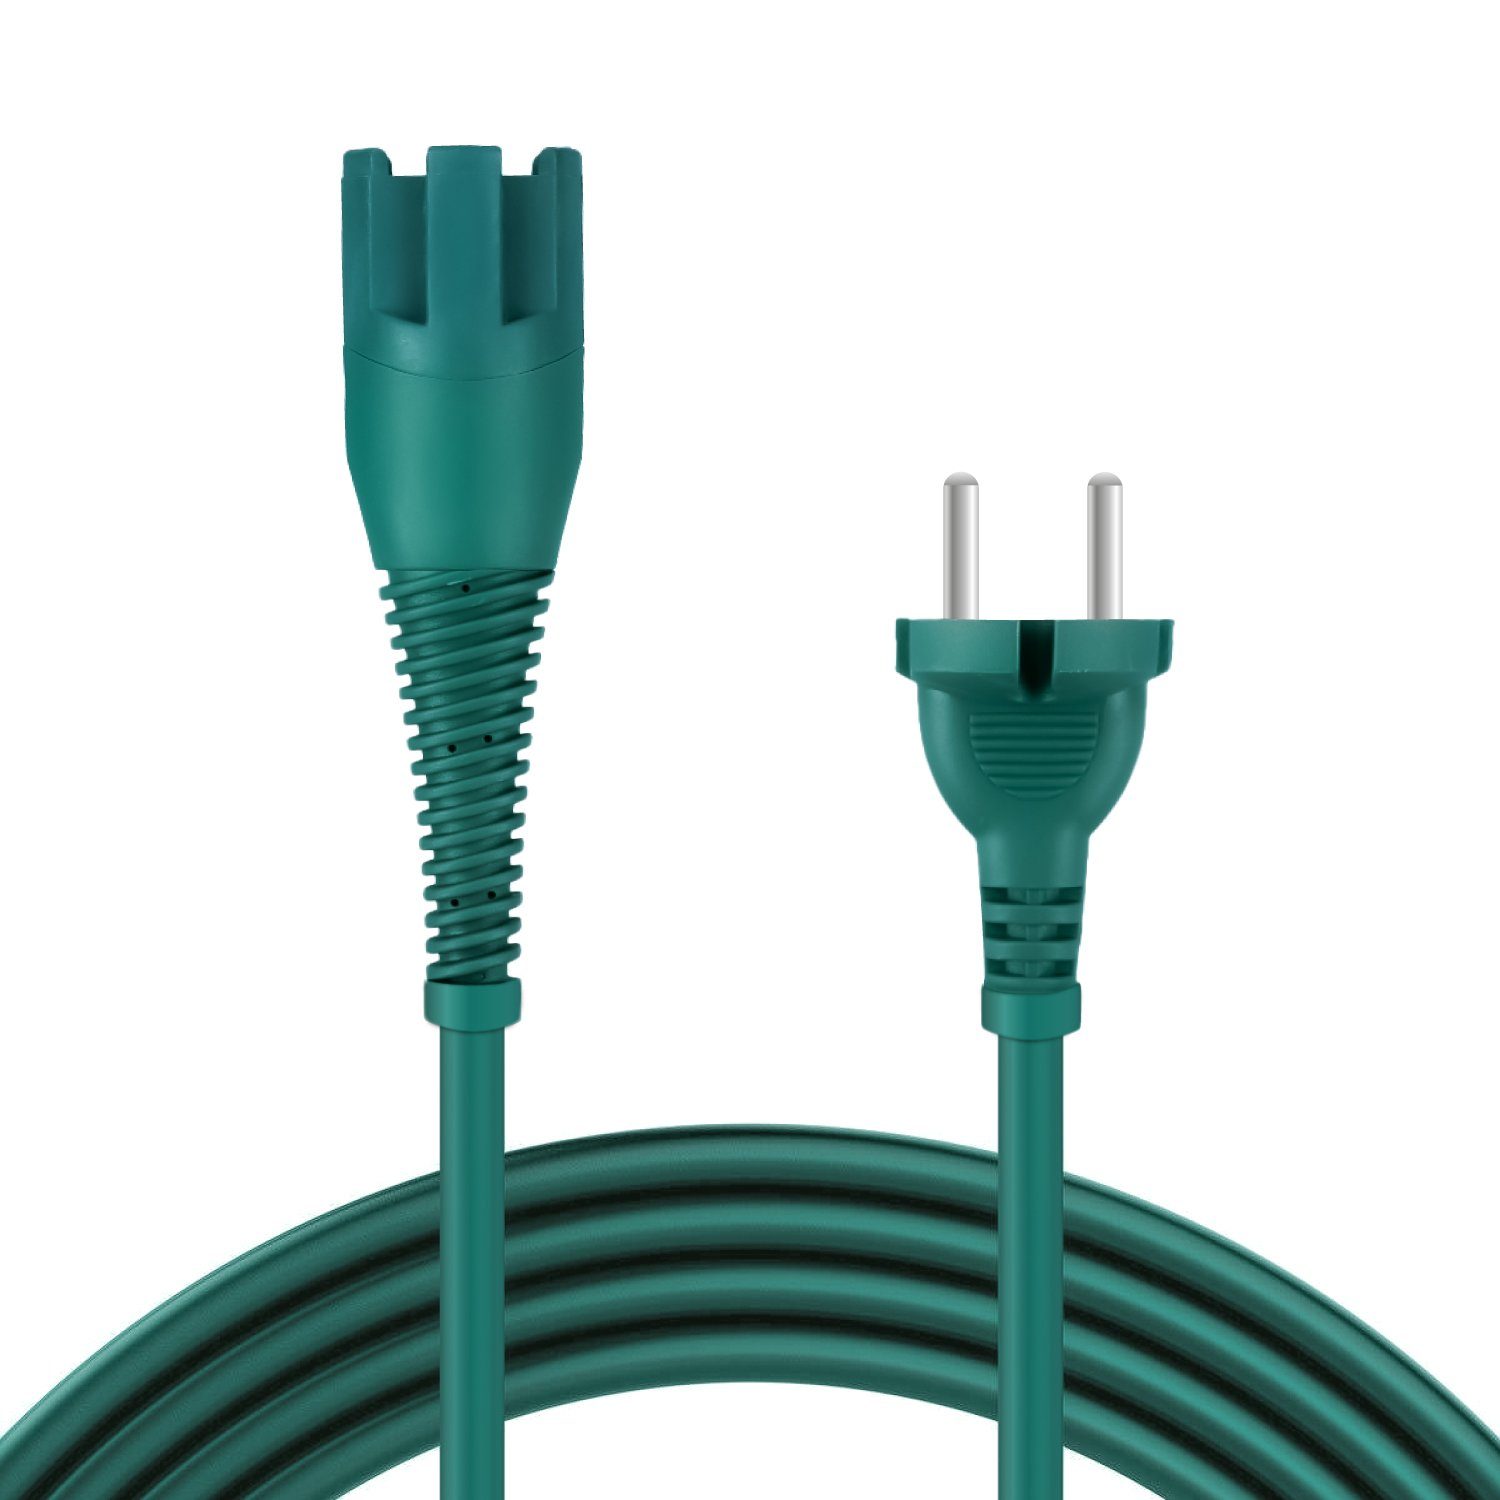 McFilter Kabel passend für Vorwerk Kobold 130, 130 SC, 131, 131 SC Stromkabel, Typ EF (Konturenstecker), (700 cm), Staubsauger Kabel